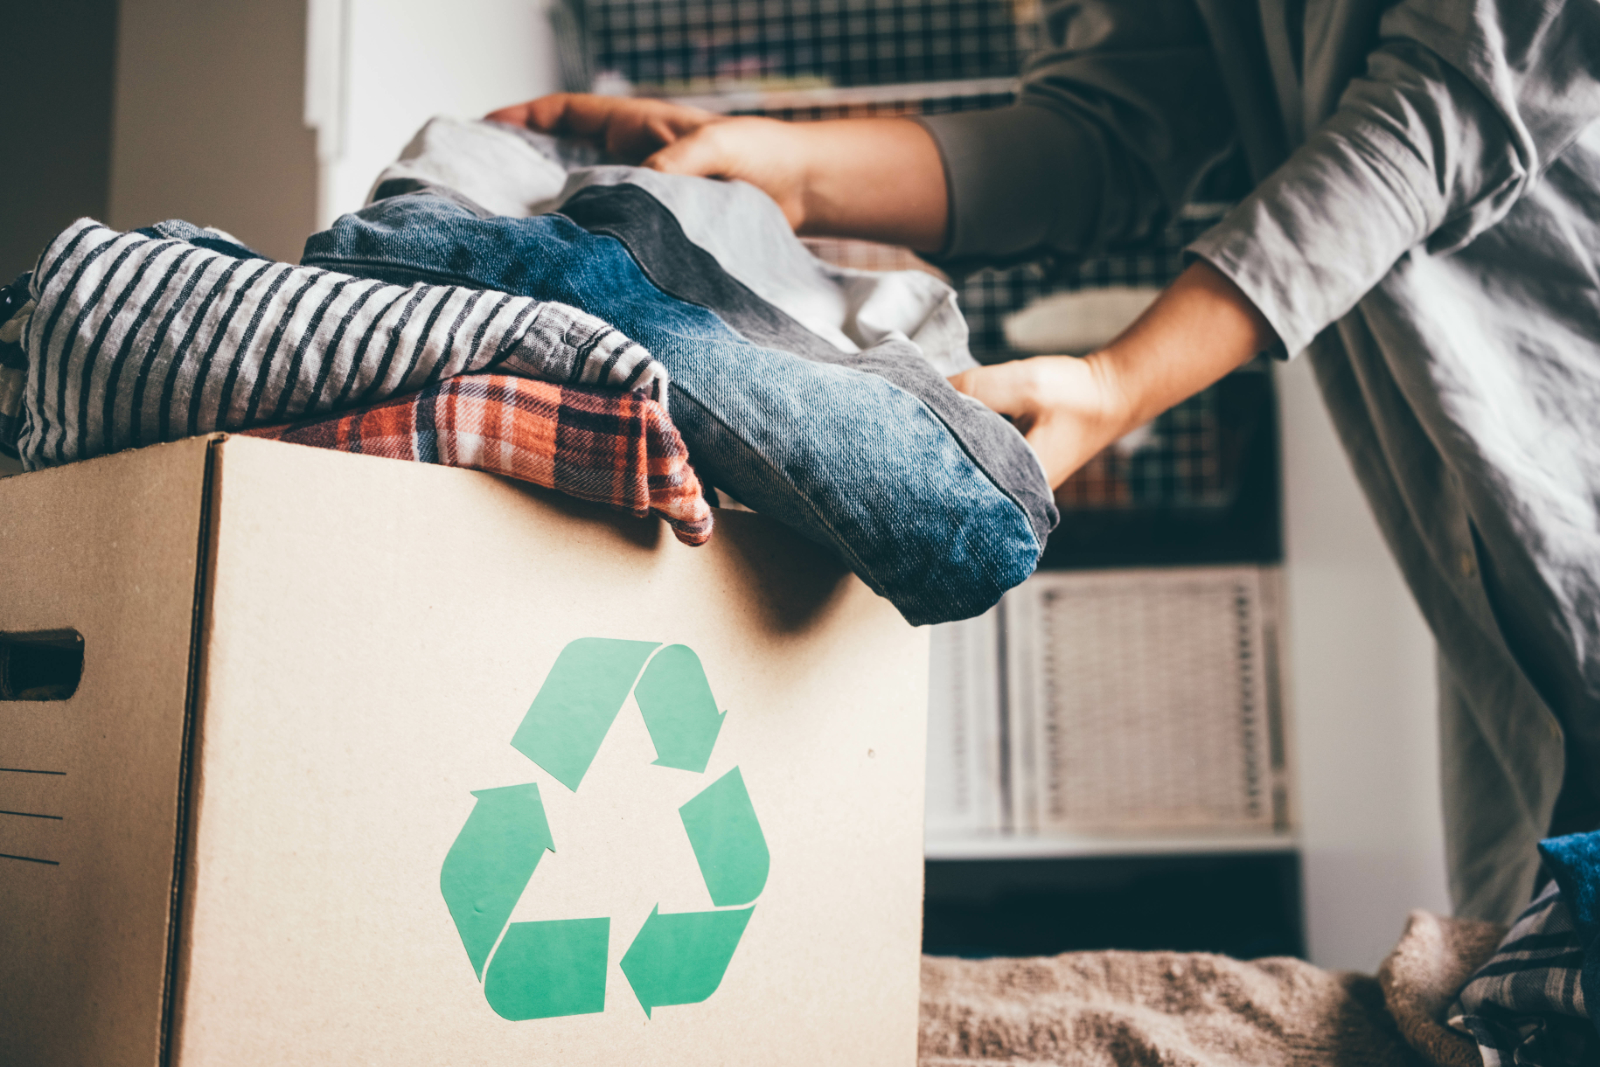 Recycler ou réutiliser d'anciens vêtements reste certainement la solution la plus respectueuse de l'environnement. ©Mariia Korneeva, Adobe Stock